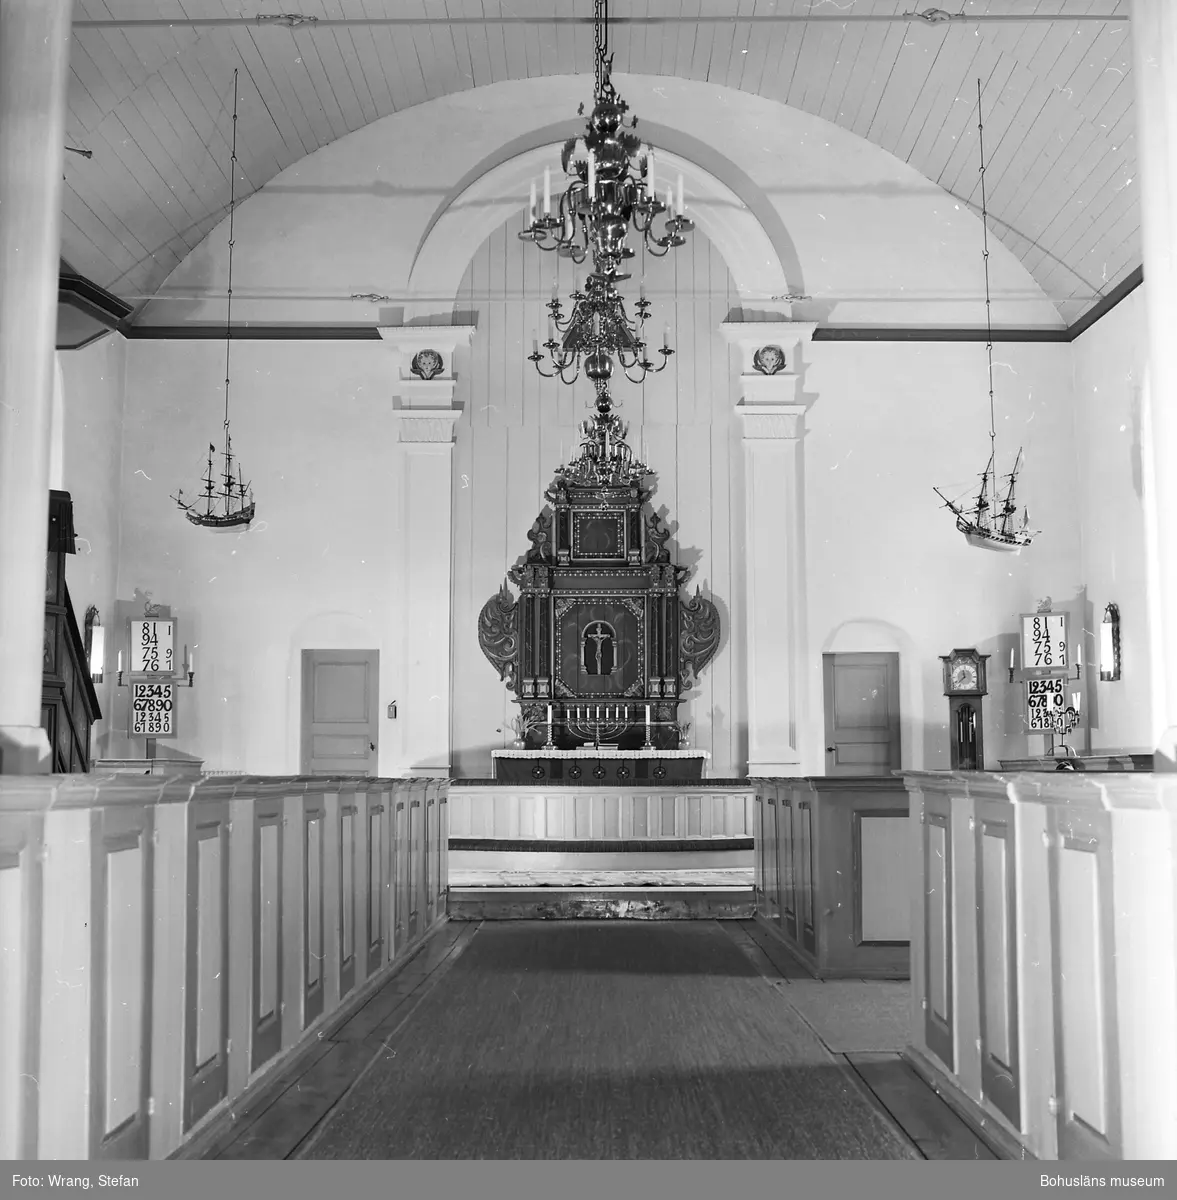 Text till bilden: "Tjärnö kyrka. Interiör mot koret".